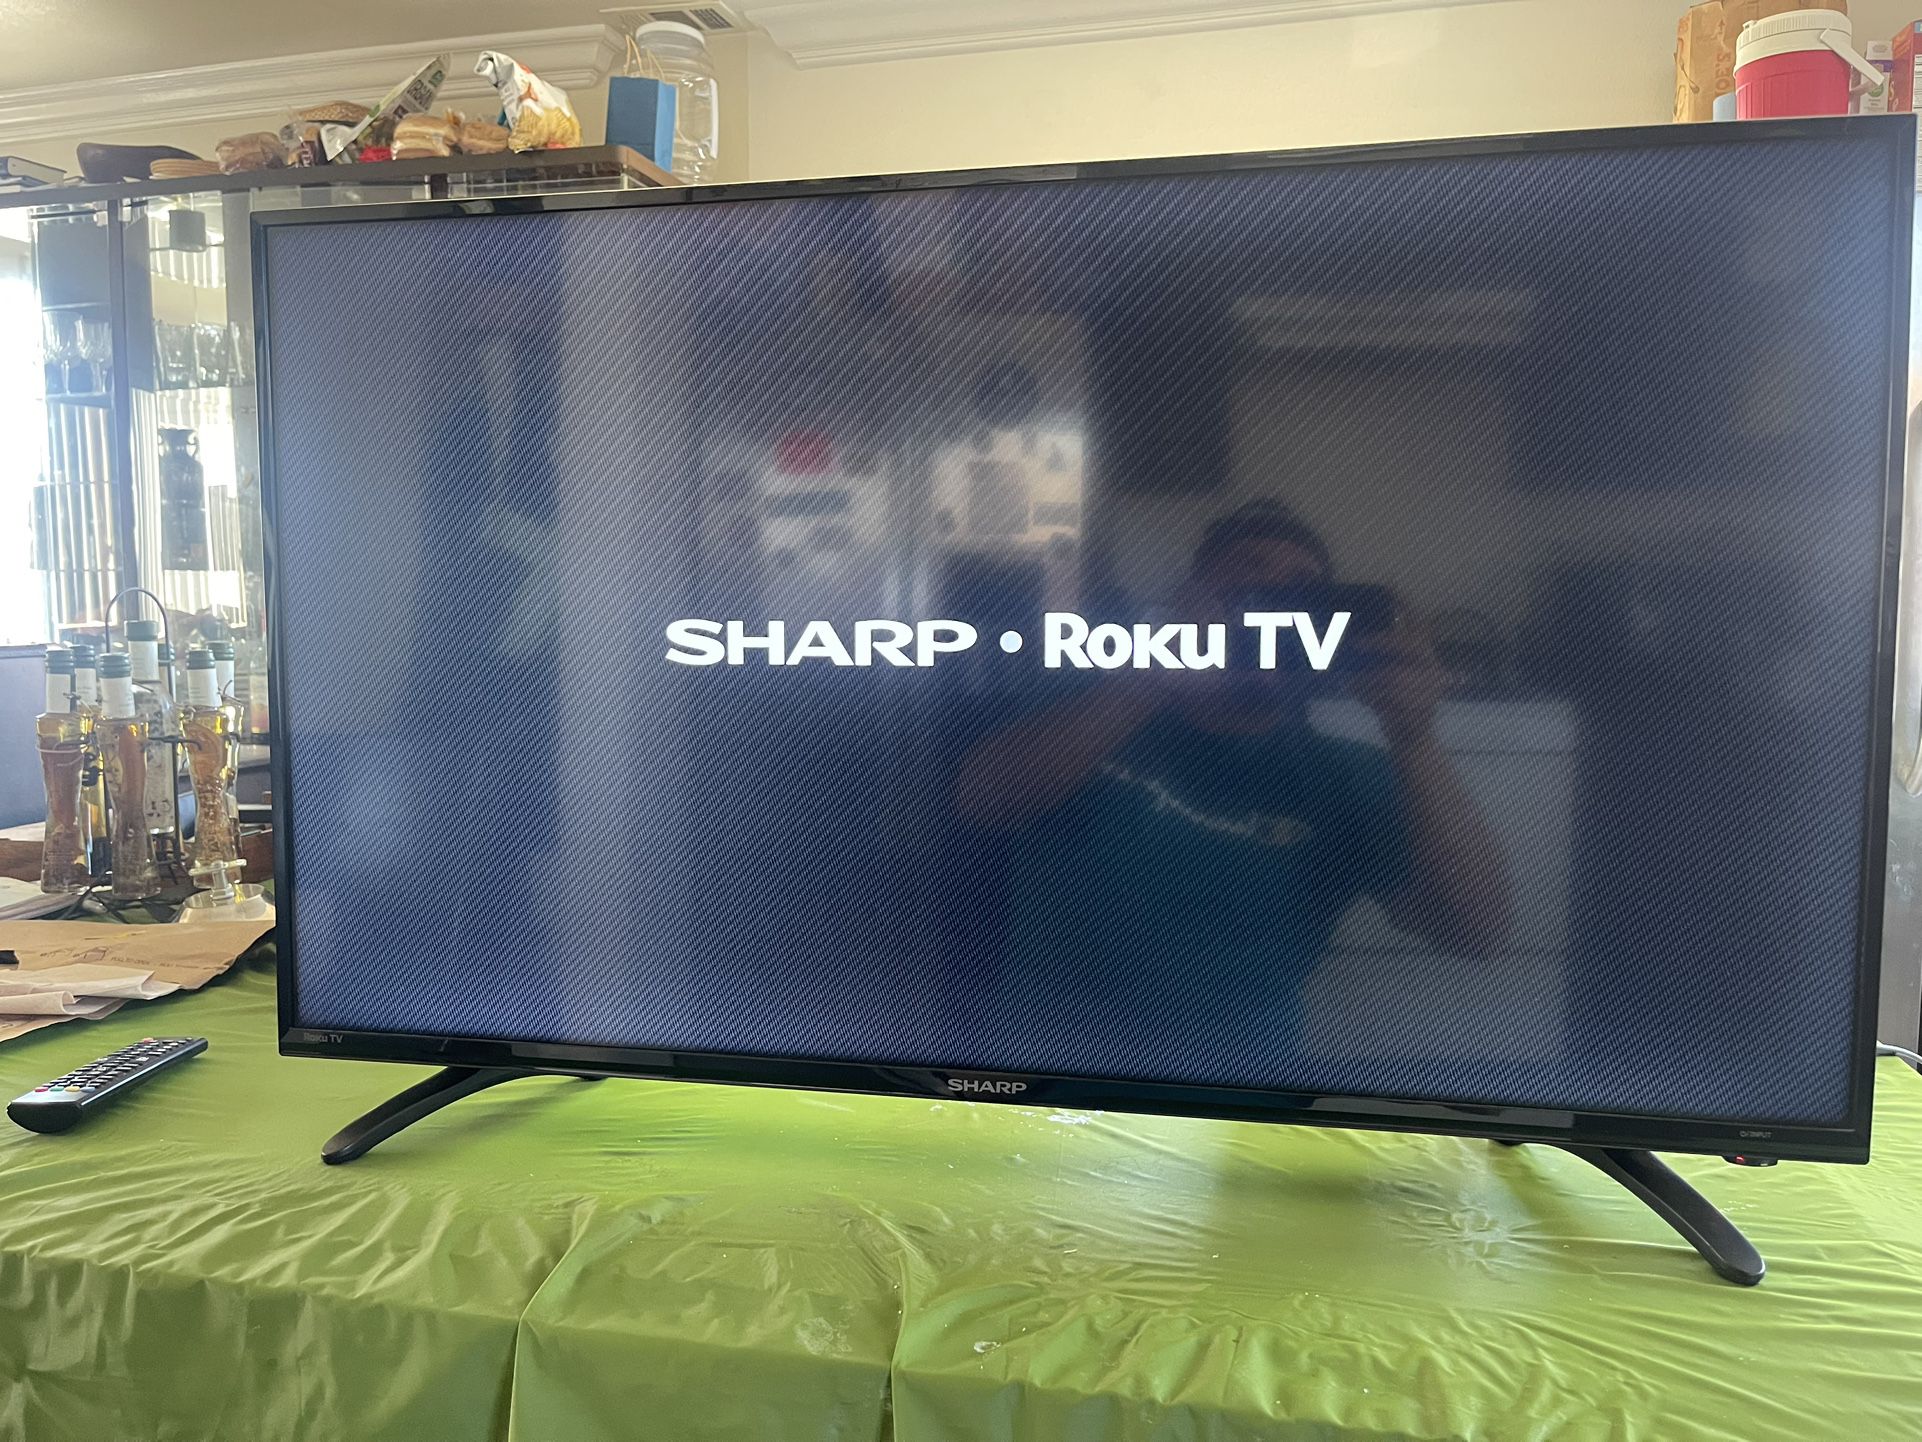 Sharp Roku 40” LED Smart TV